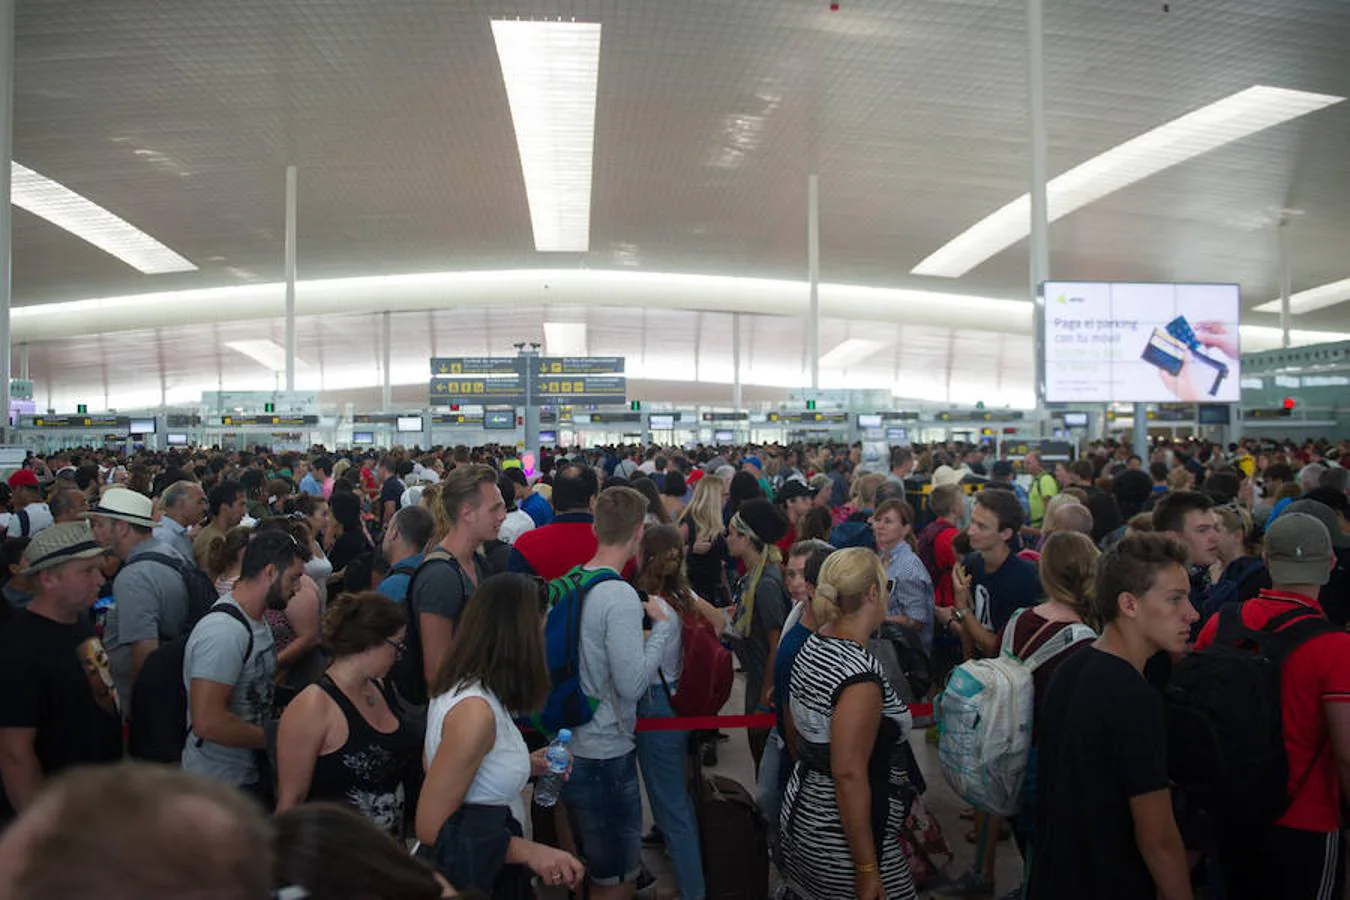 Estas largas colas, que han desbordado el espacio central de la terminal e incluso han llegado a serpentear sobre sí mismas, han provocado muchos nervios e indignación entre los pasajeros